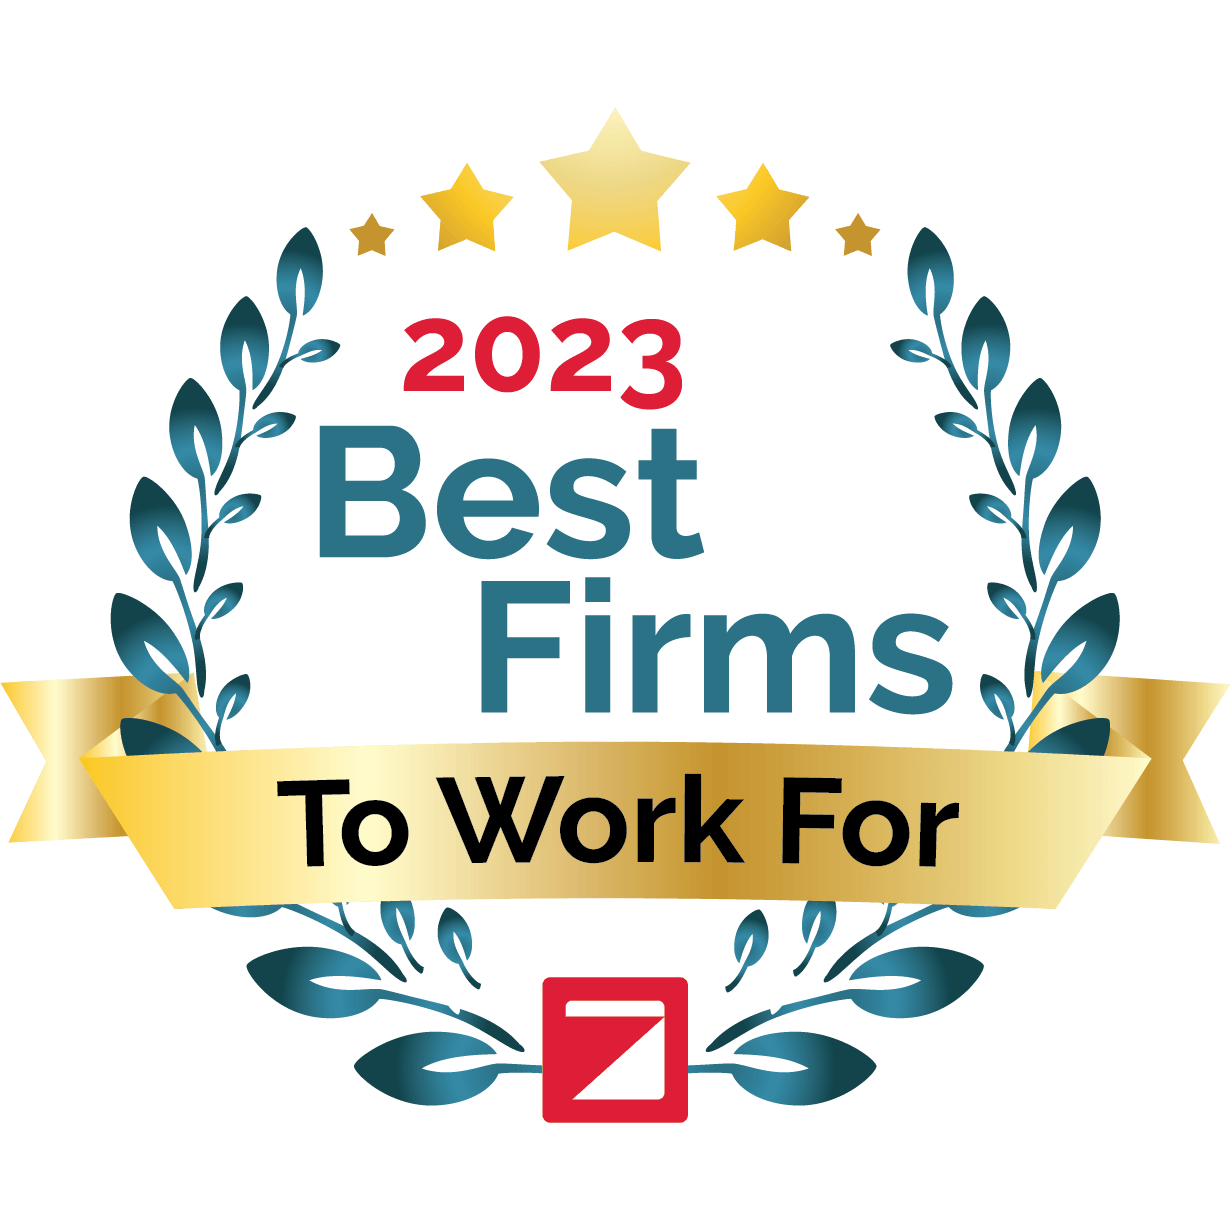 Zweigs 2023 Best Firms to Work For Emblem